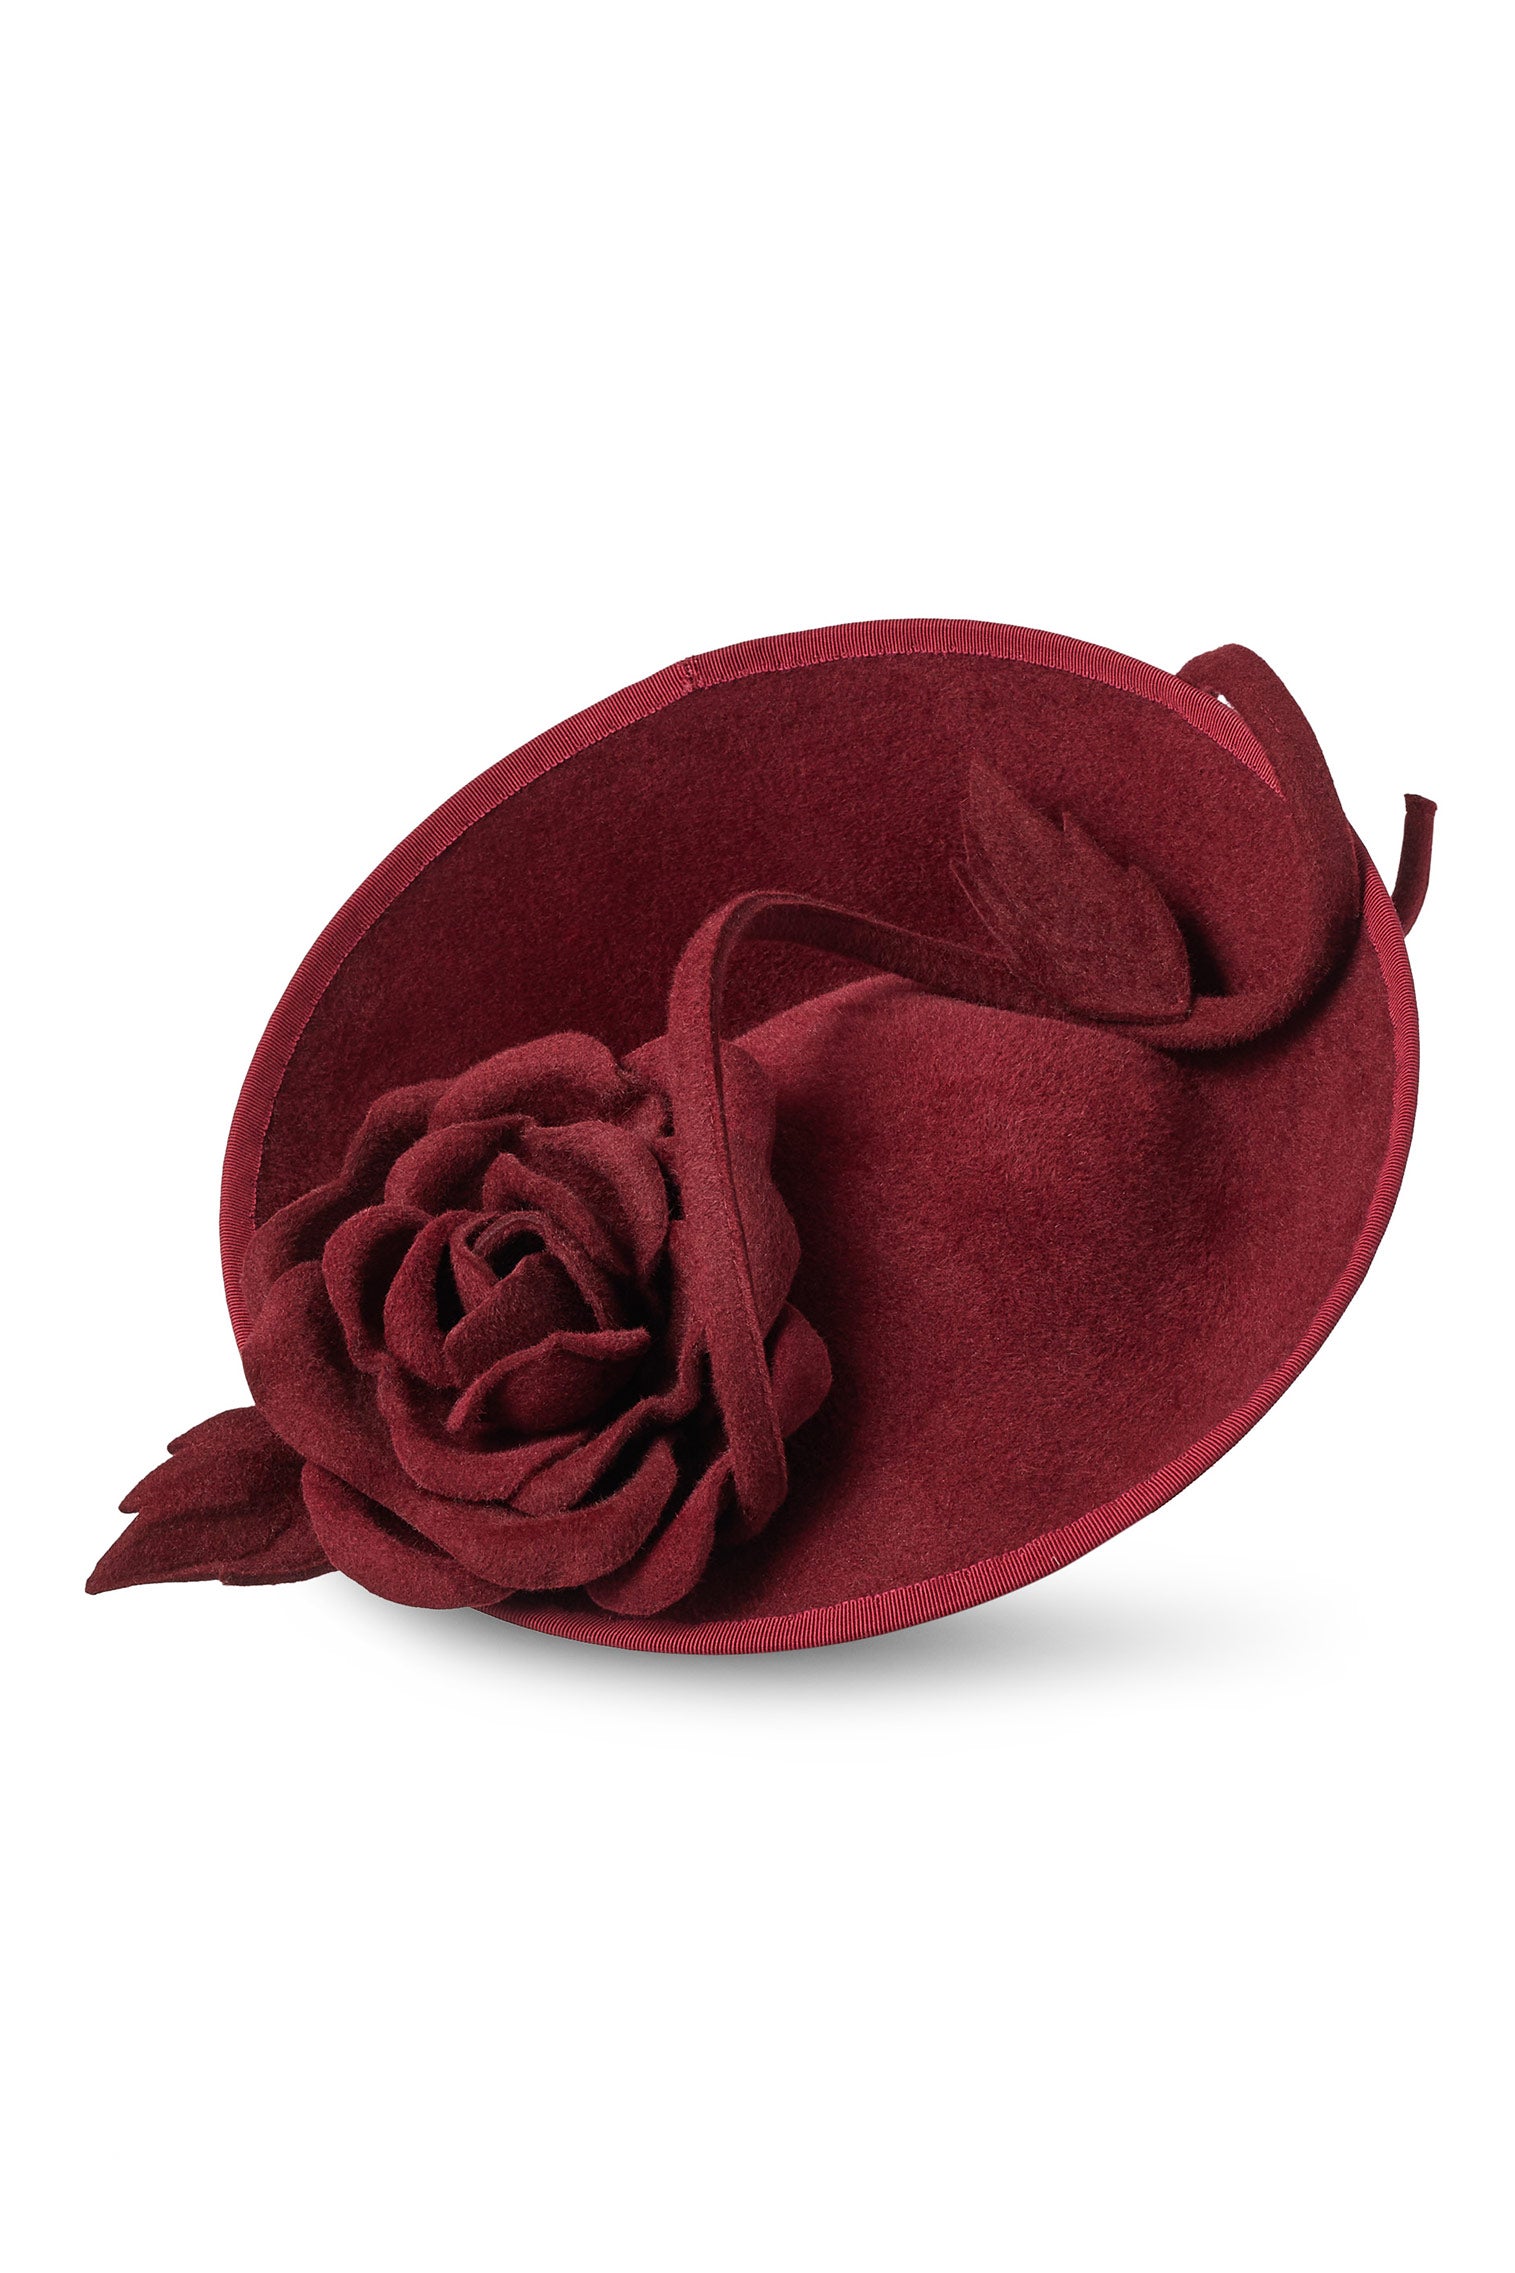 Belgravia Rose Hat - Women’s Hats - Lock & Co. Hatters London UK